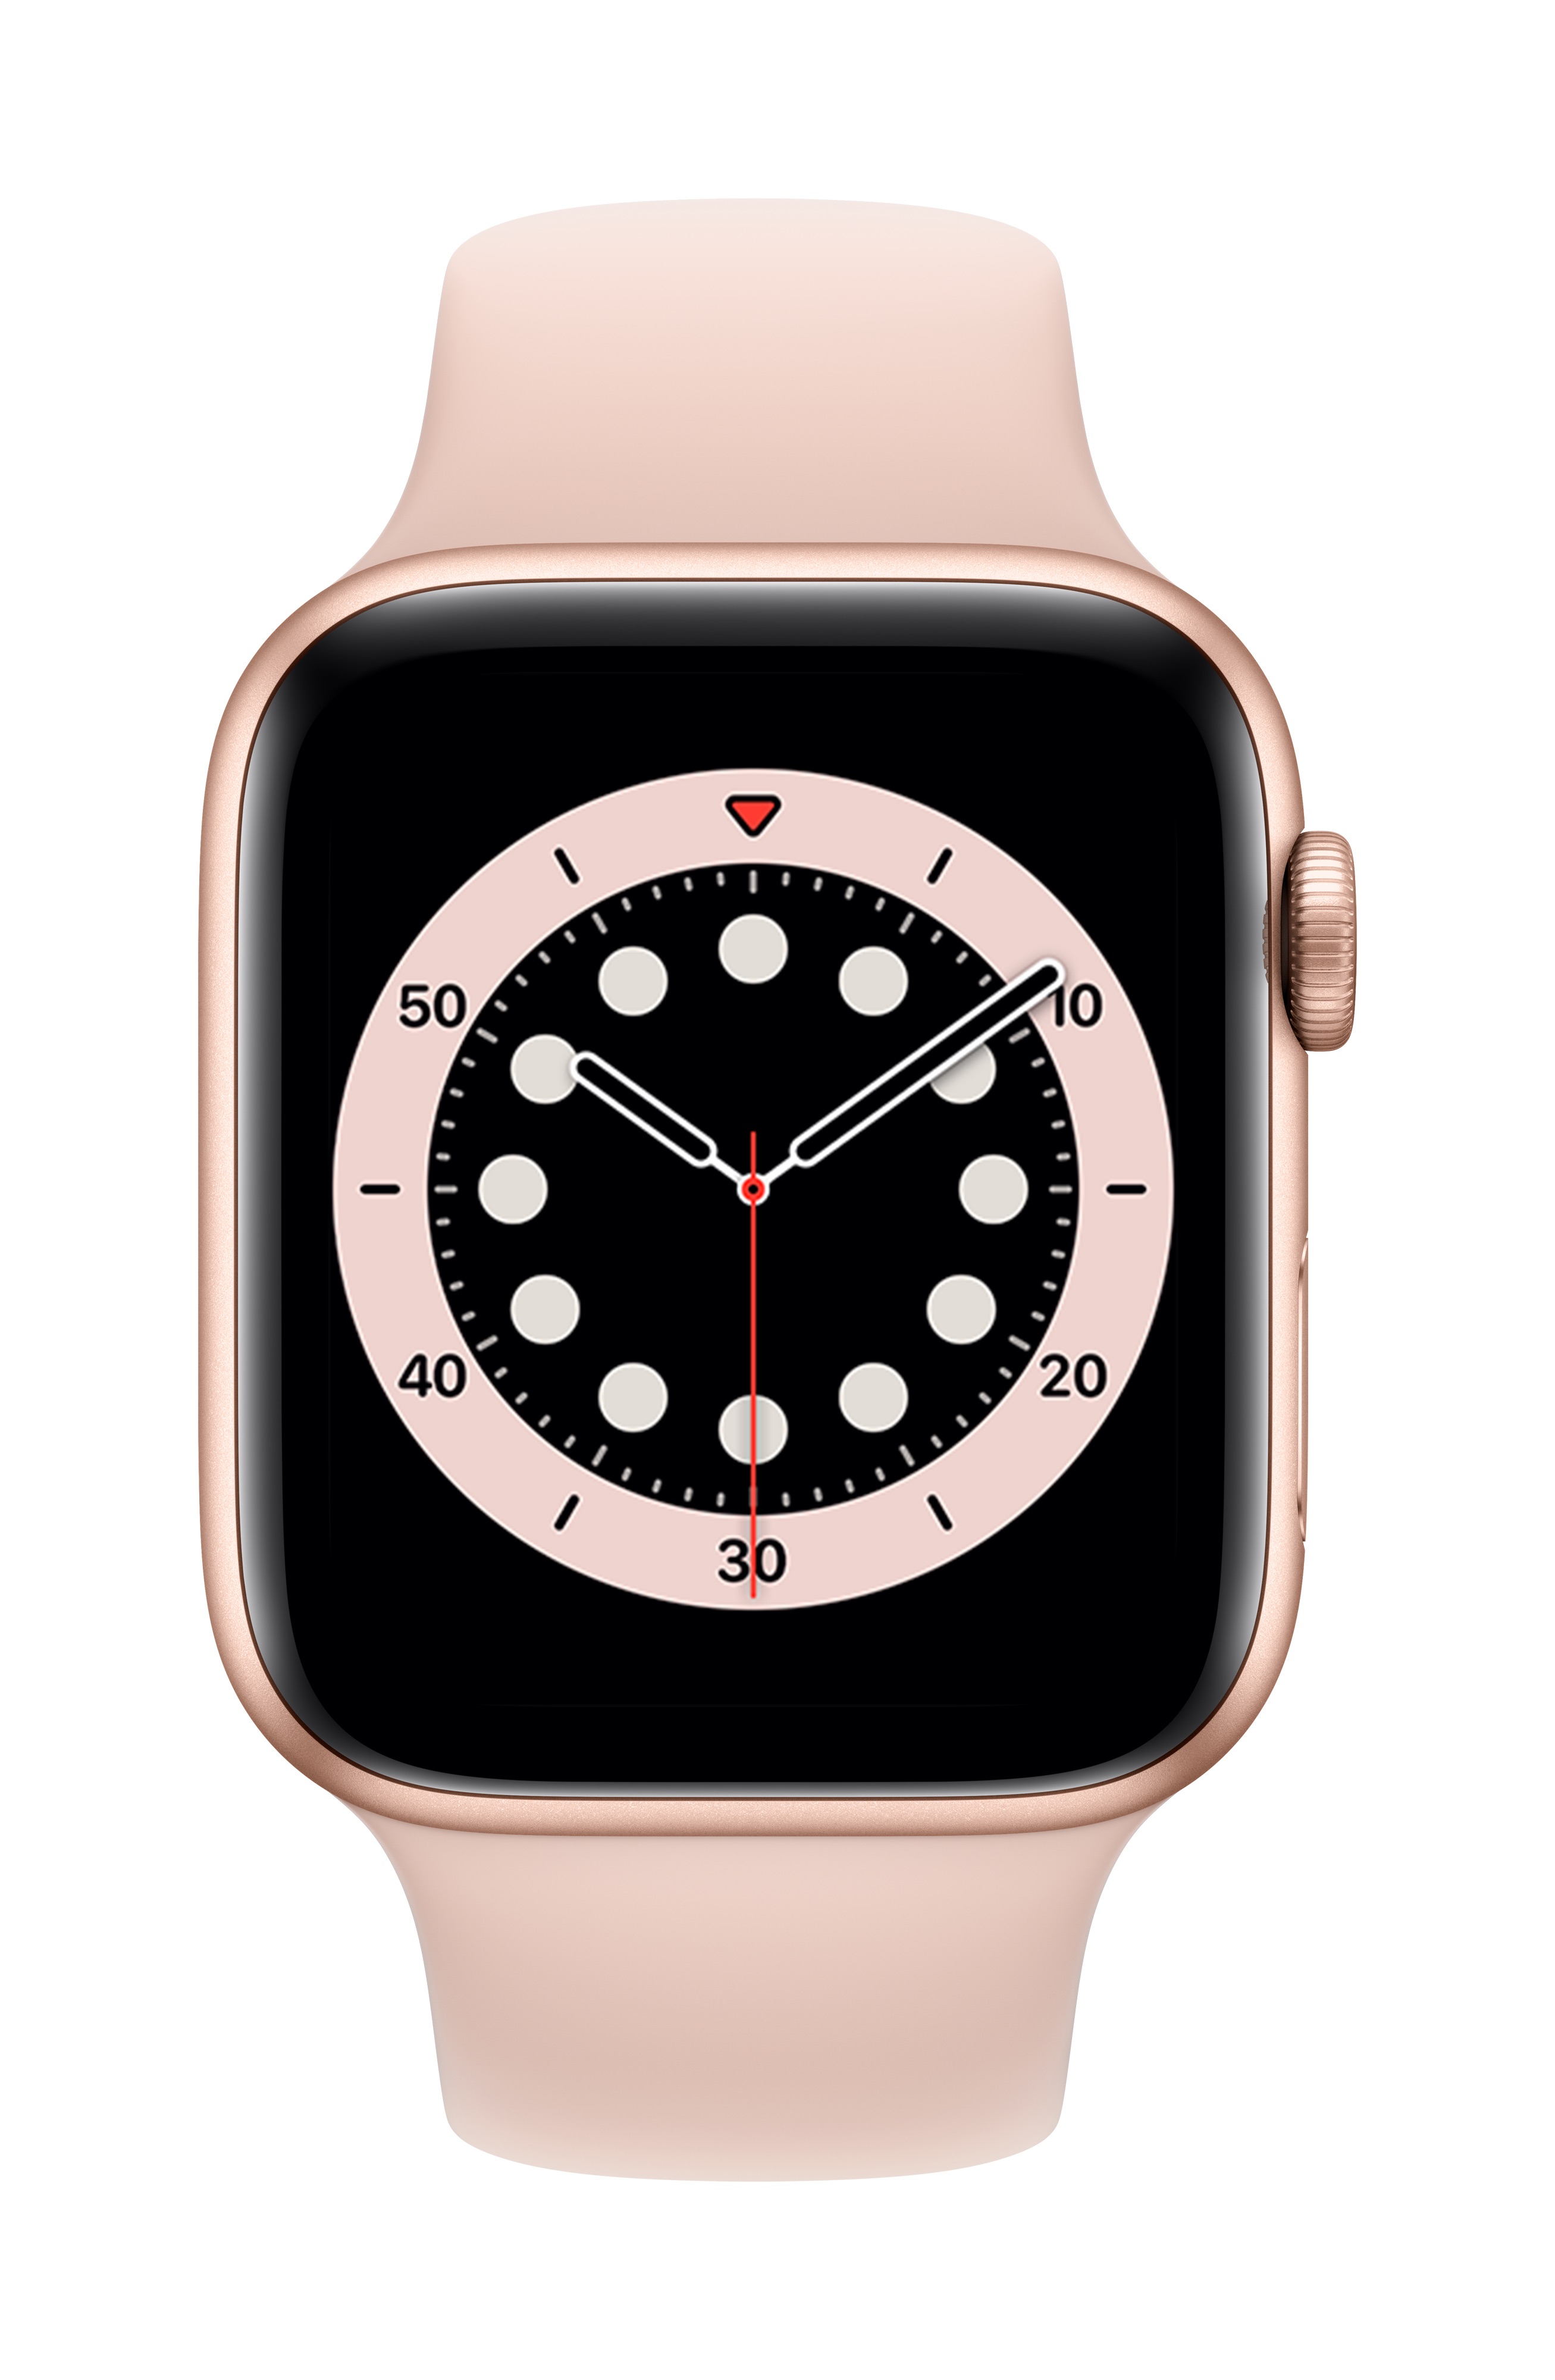 [NEW] Đồng hồ thông minh Apple Watch Series 6 44mm (GPS) Vỏ Nhôm Vàng, Dây Cao Su Vàng (M00E3VN/A) - Hàng chính hãng, mới 100%